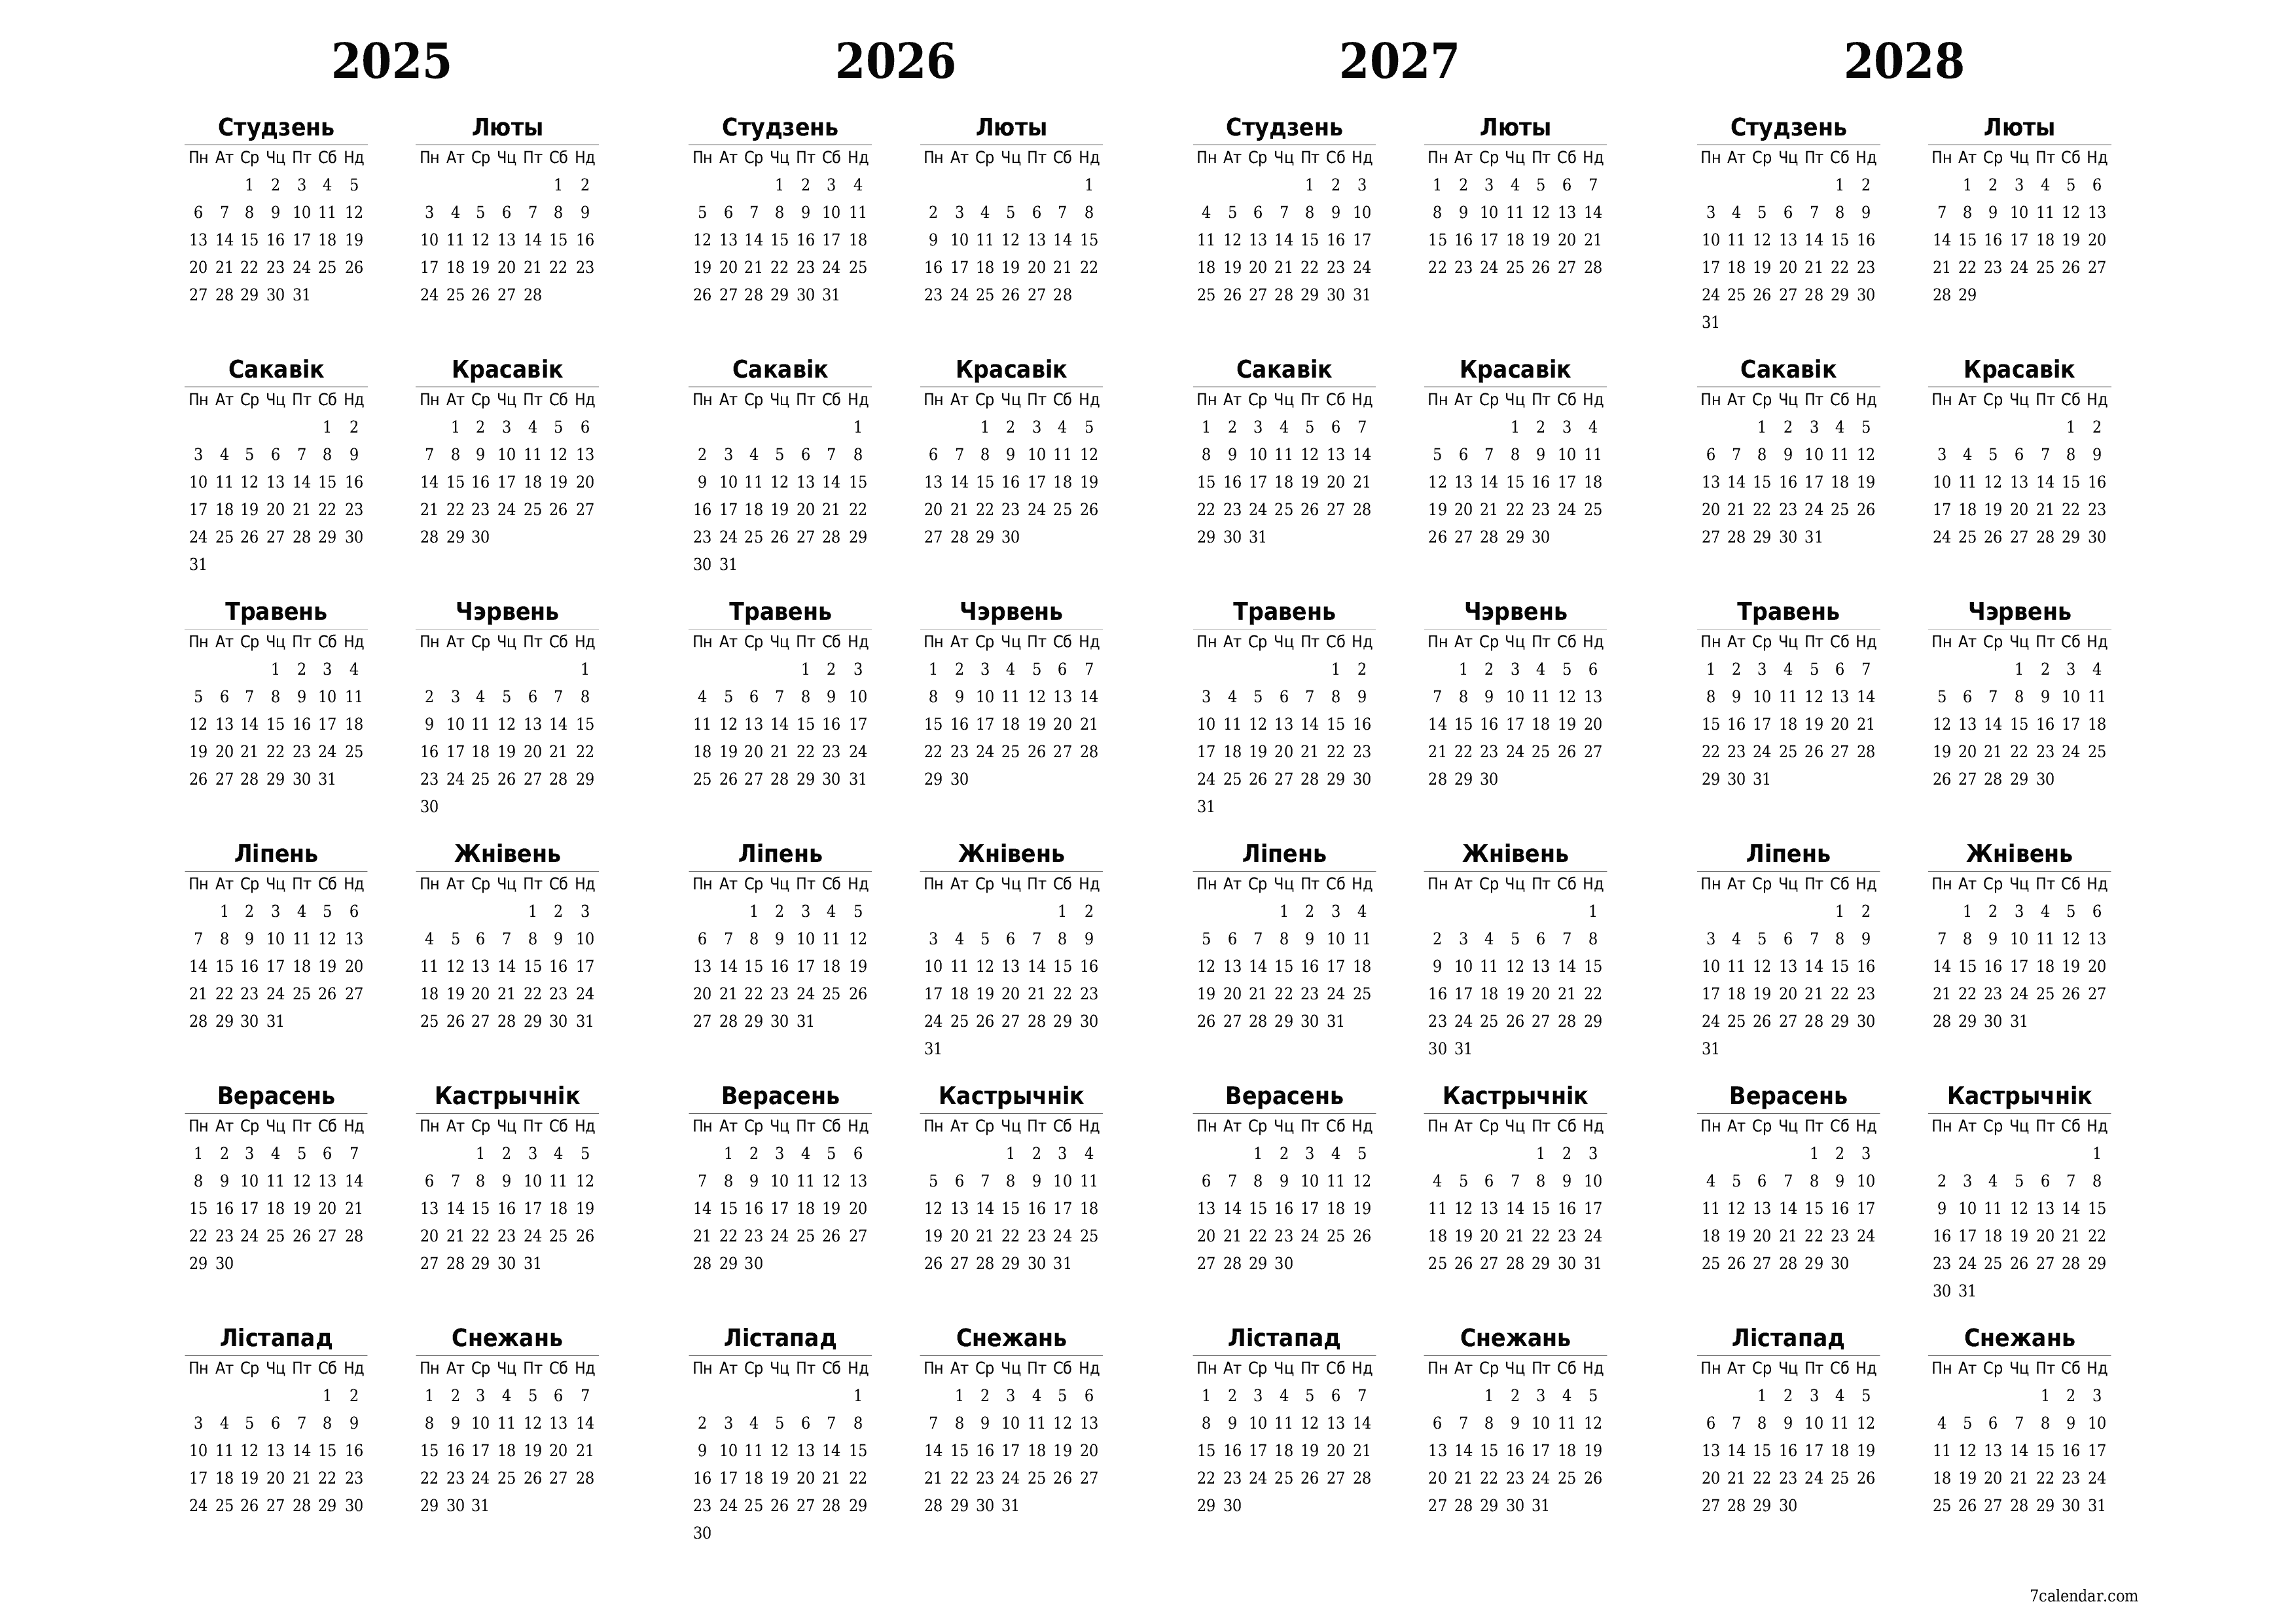  для друку насценны шаблон календара бясплатны гарызантальны Штогадовы каляндар Люты (Лют) 2025